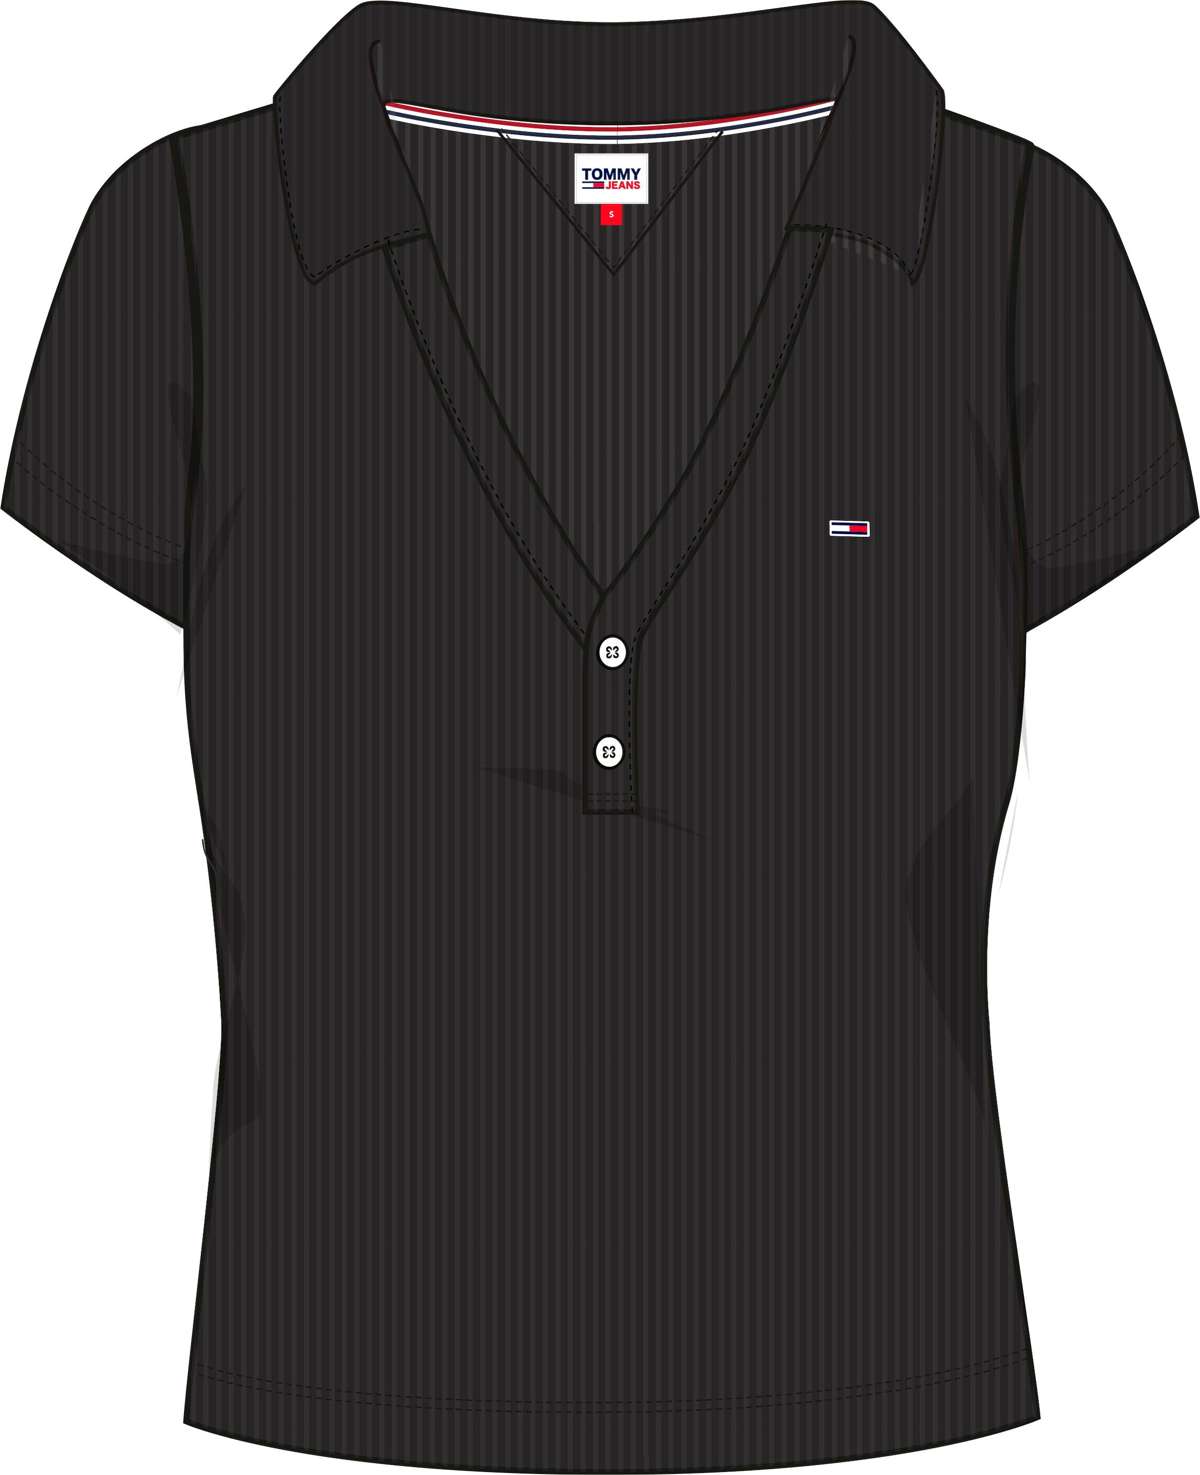 Рубашка-поло с короткой планкой на пуговицах